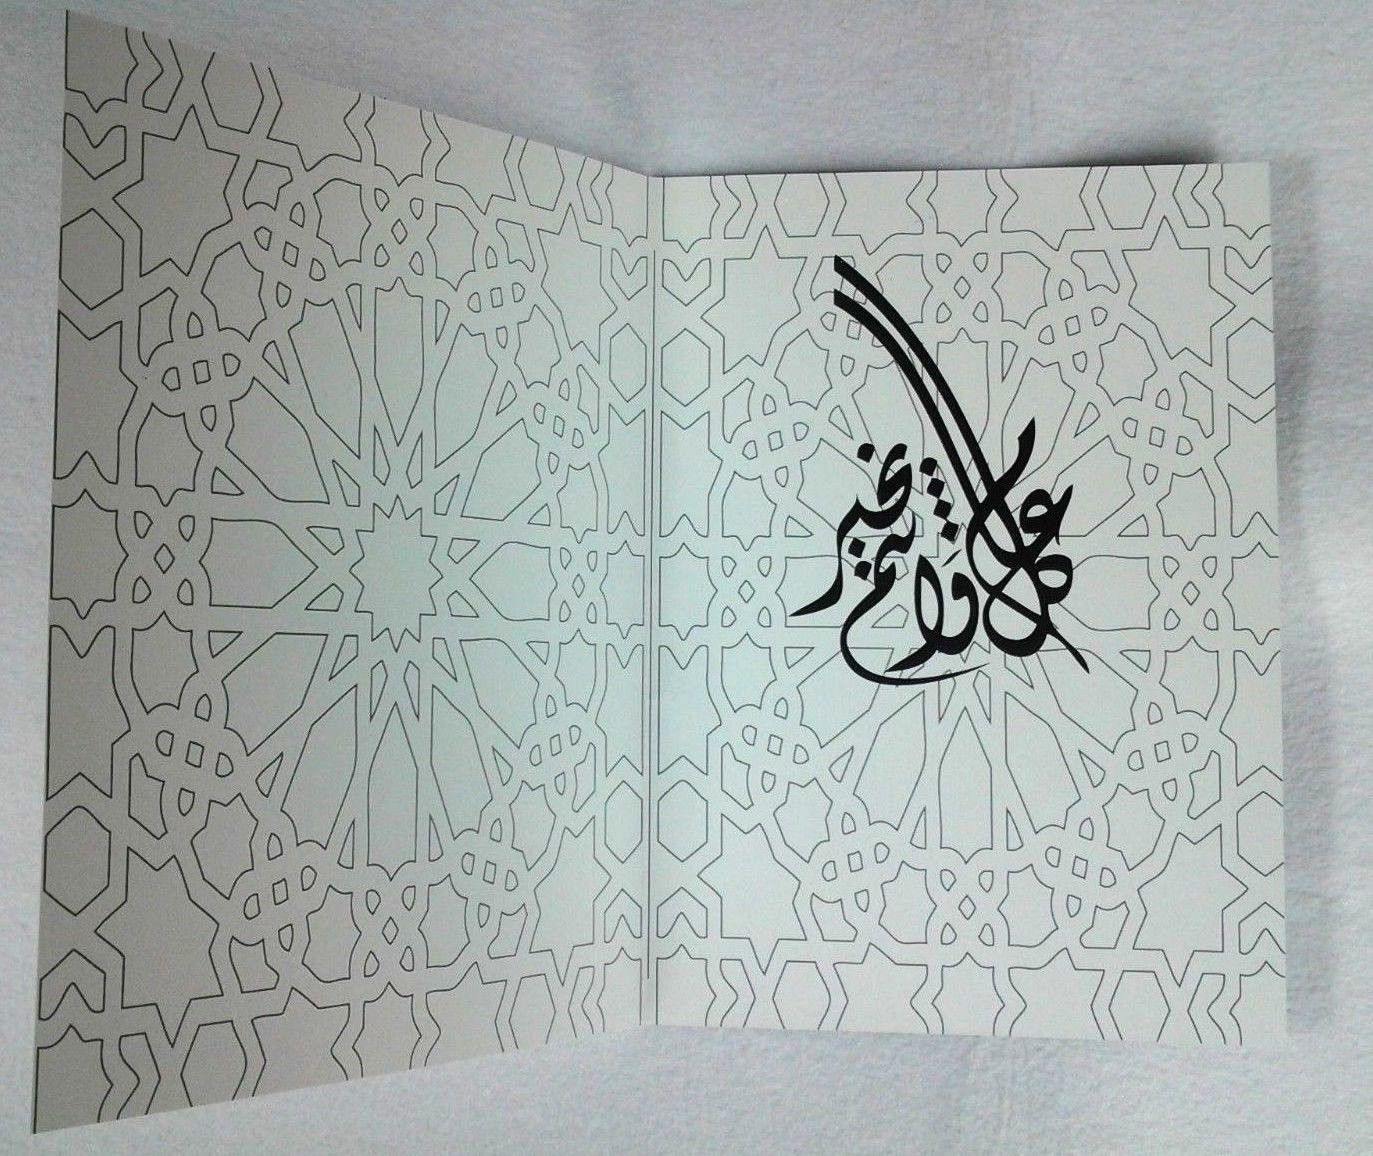 A5 Eid Mubarak Ramadan Card Happy Eid Muslim Greeting Cards Islamic Art/Gift - Islamic Shop